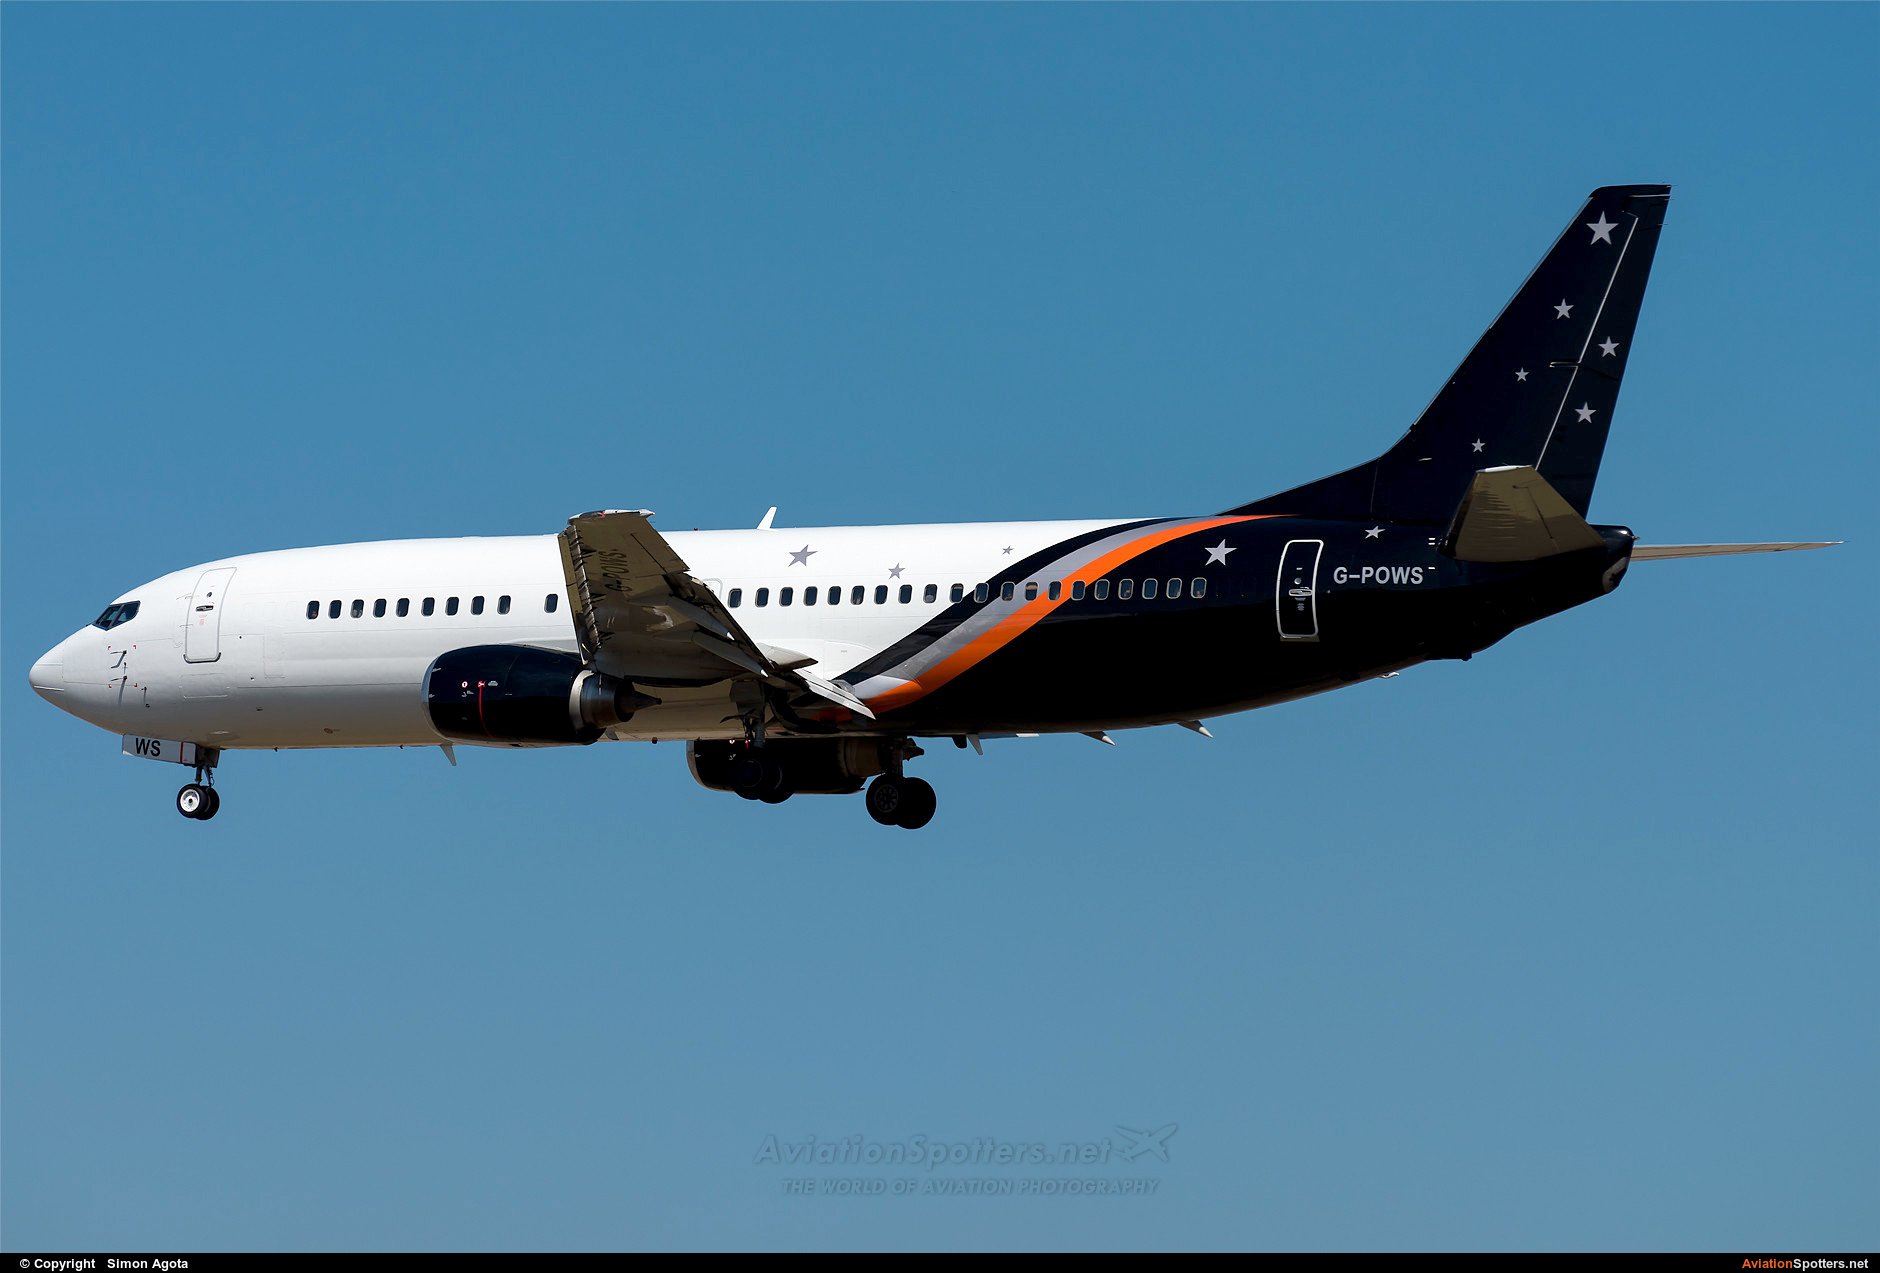 Titan Airways  -  737-400  (G-POWS) By Simon Agota (goti80)